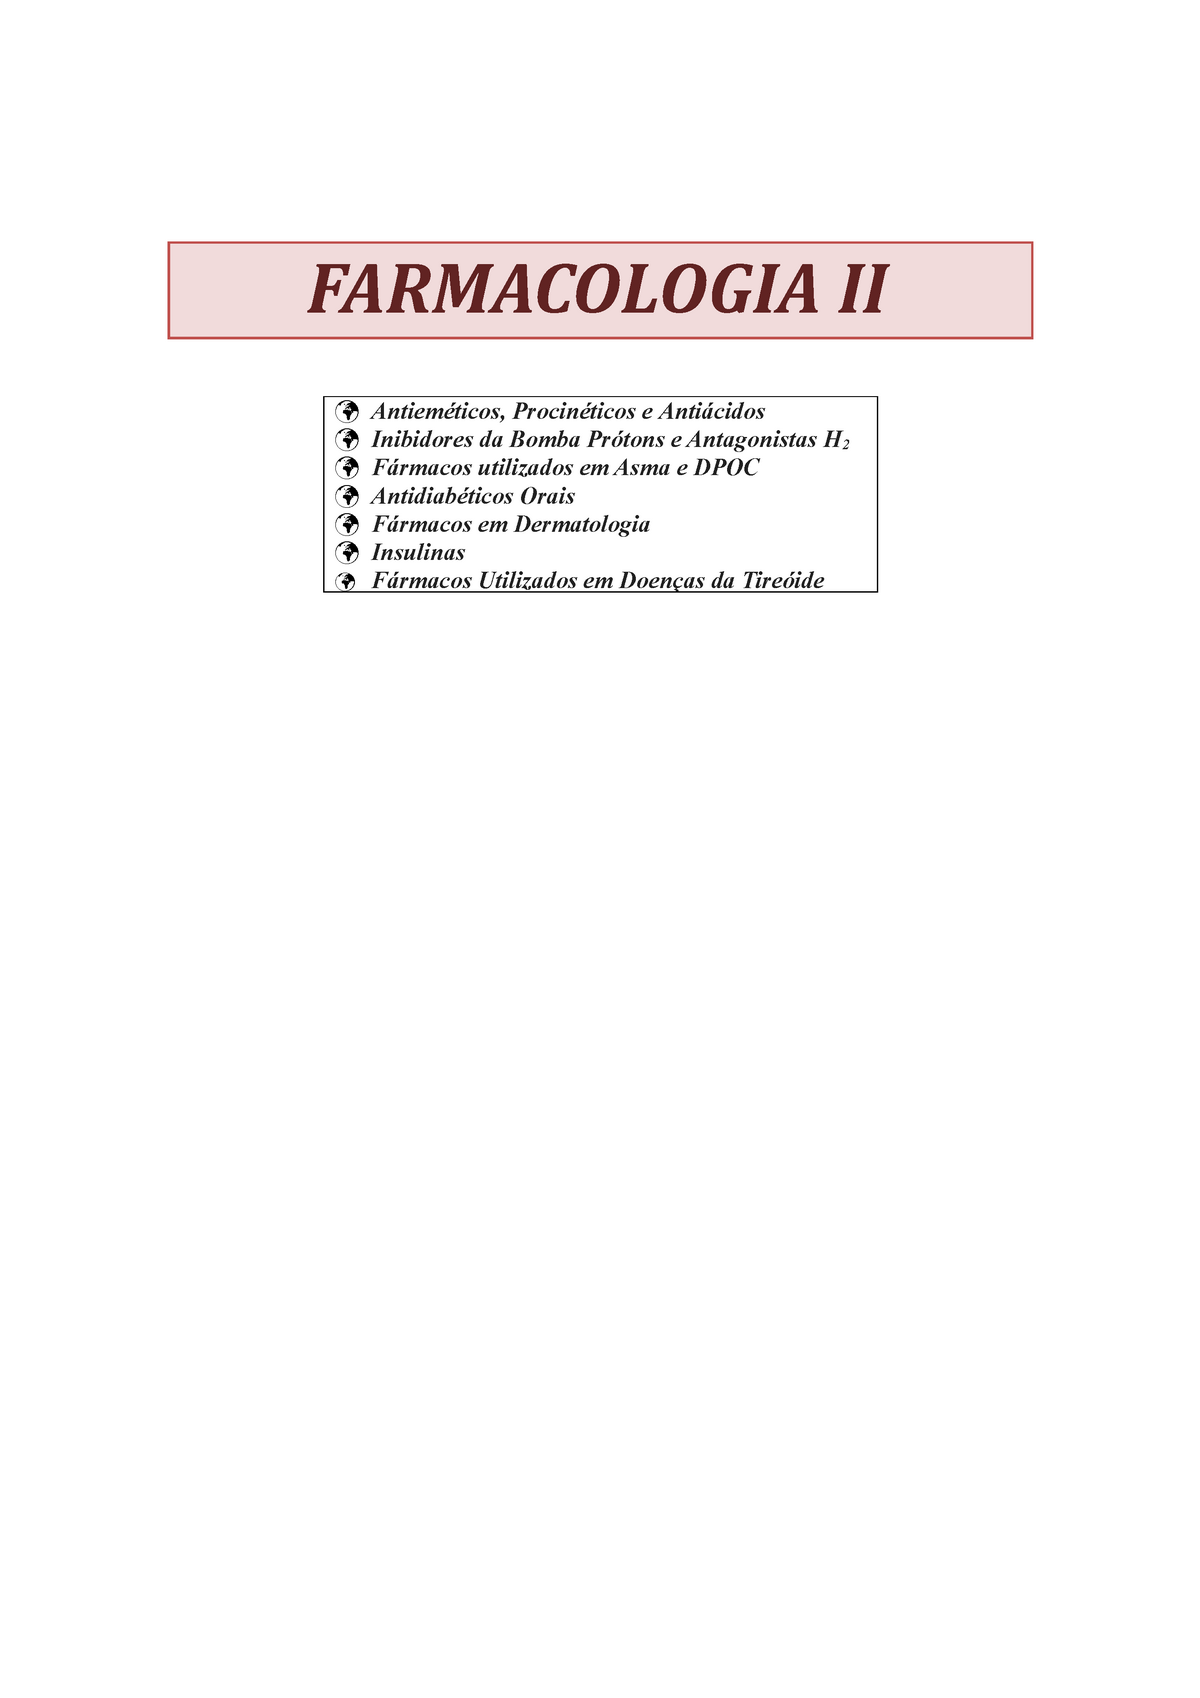 Farmacologia-2 - Farmacologia I